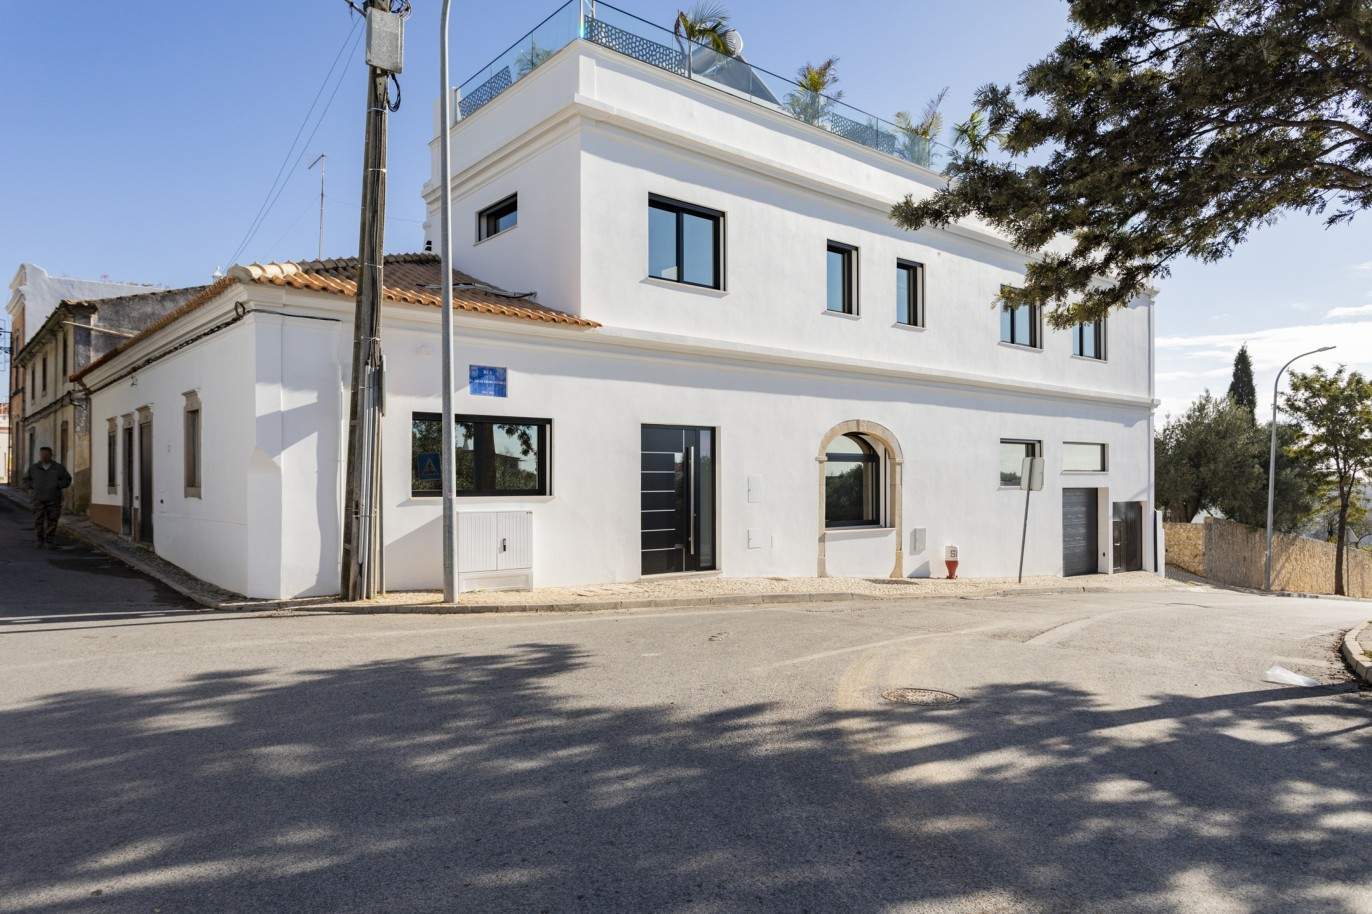 3 Bedroom Villa, with swimming pool, for sale in Santa Barbara de Nexe, Algarve_213399